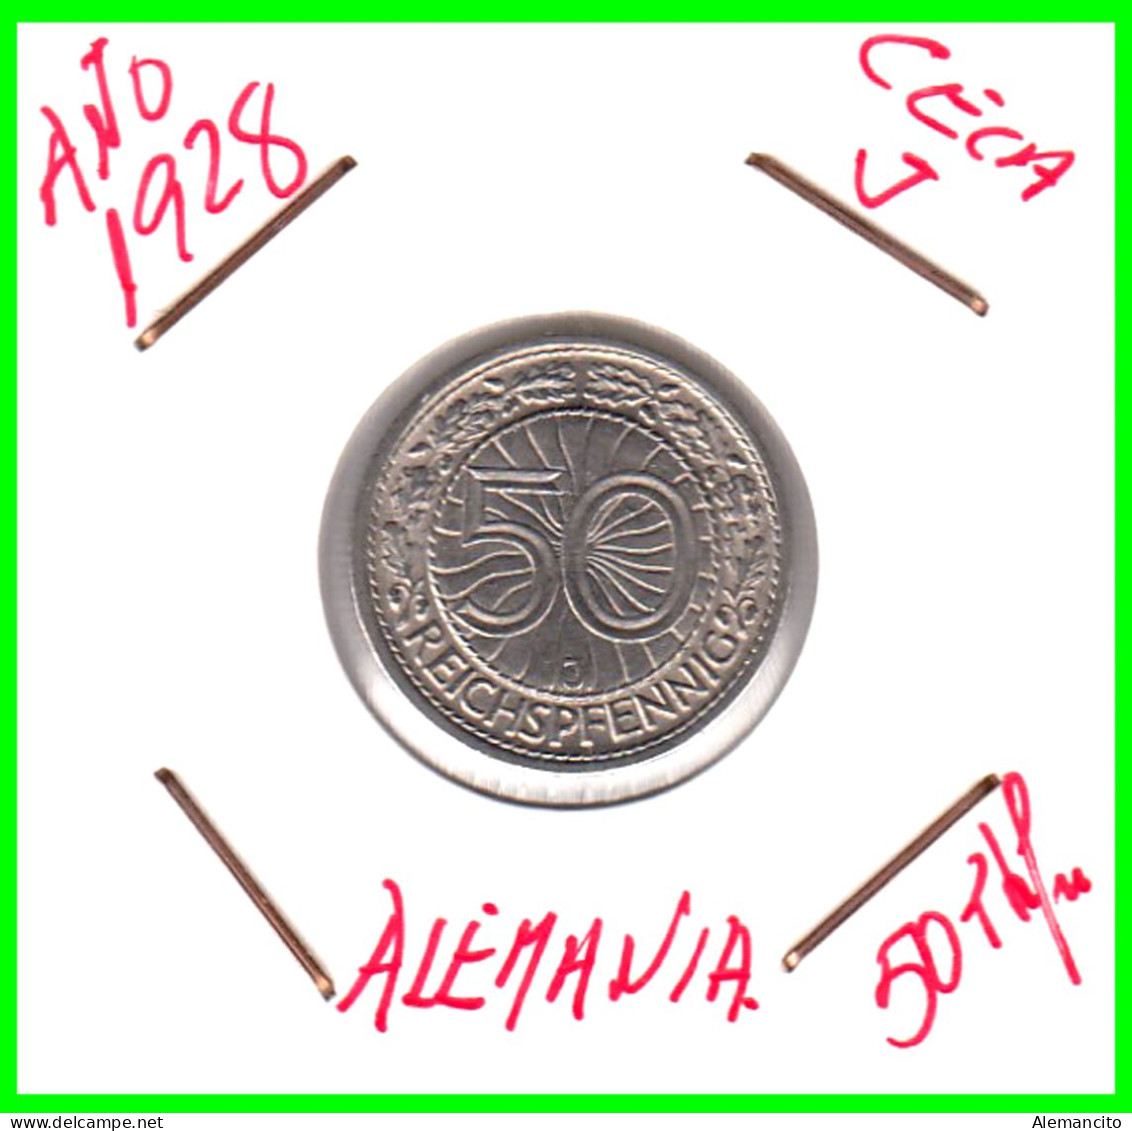 GERMANY REPÚBLICA DE WEIMAR 50 REICHSPFENNIG ( 1928 CECA - J )  (REICHSPFENNIG KM # 40 - 50 Rentenpfennig & 50 Reichspfennig